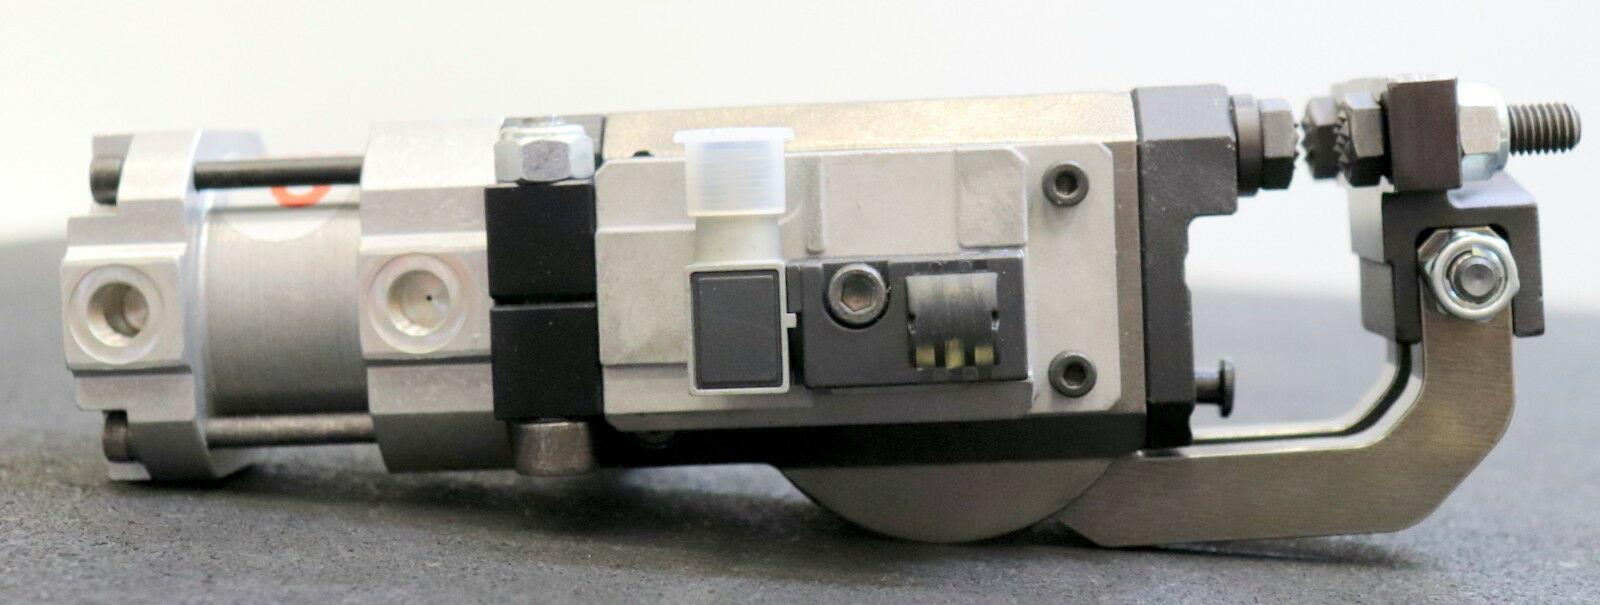 VEP AUTOMATION Flansch-Greifer Greifer-Spanner B40-A2S4-PLA-45-A-A Zylind.Ø 40mm